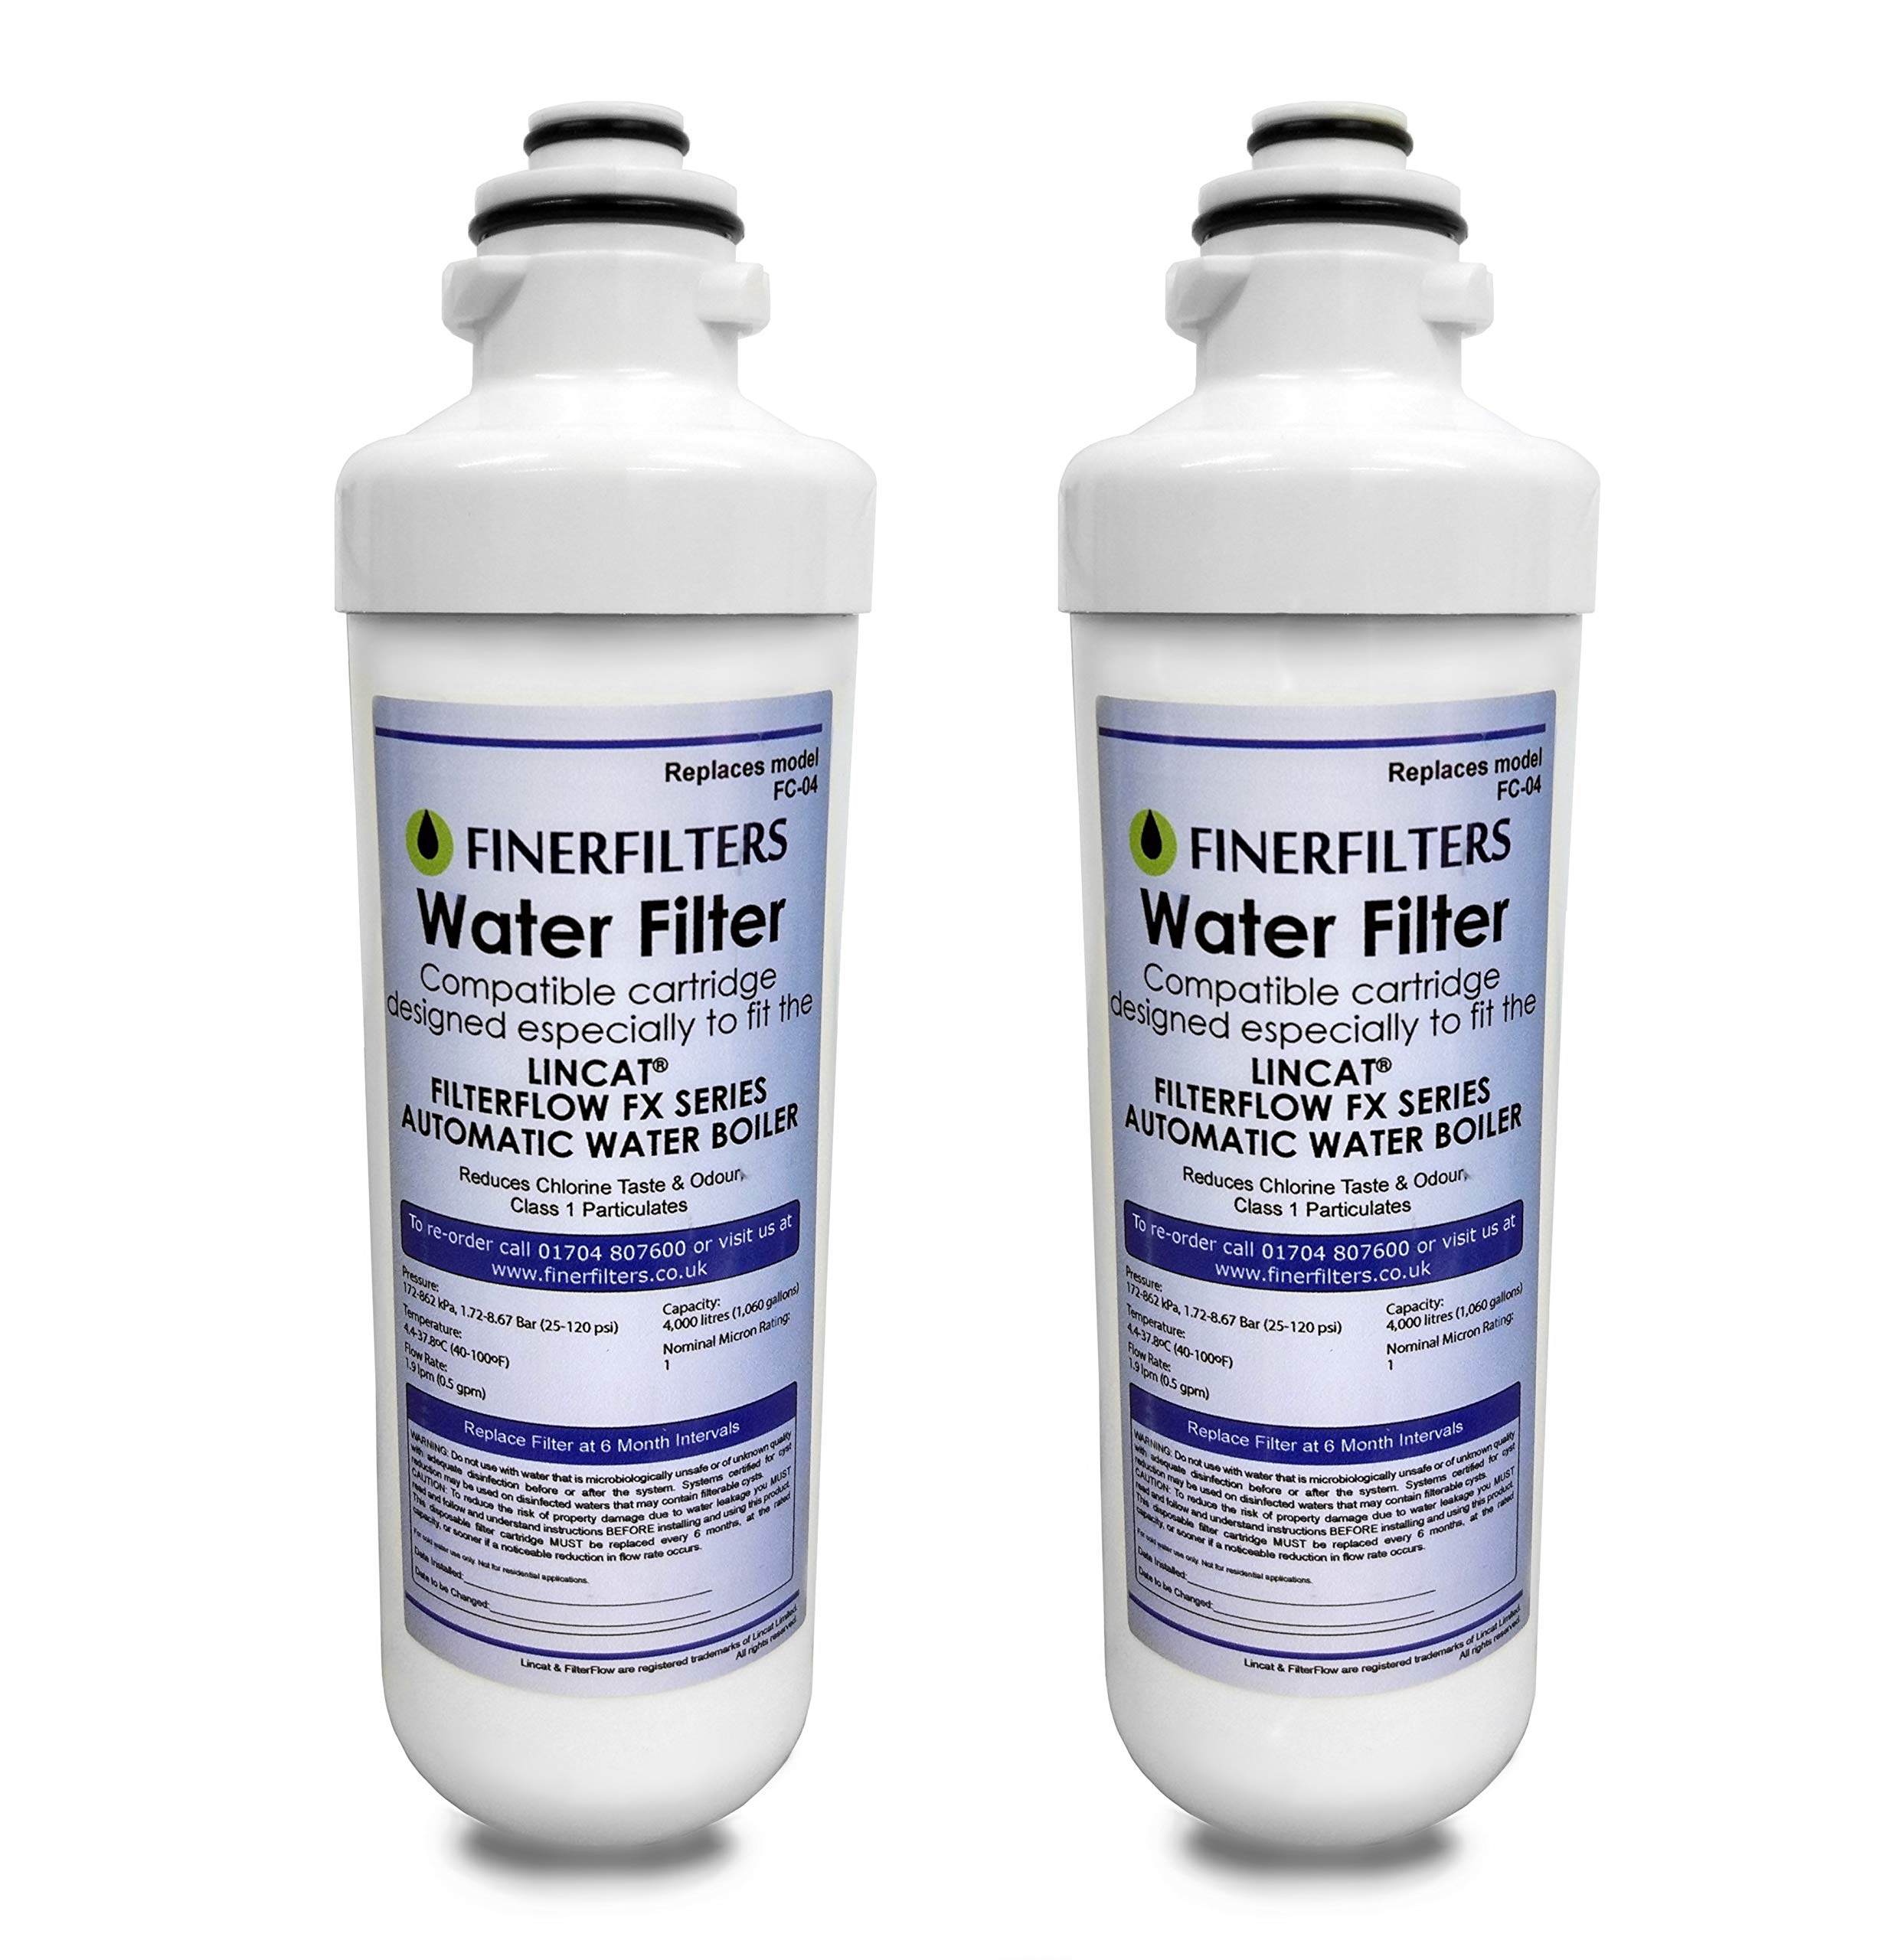 Finerfilters FC04 Wasserfilter, kompatibel mit allen Lincat FilterFlow FX-Serie von Boilern, 2 Stück